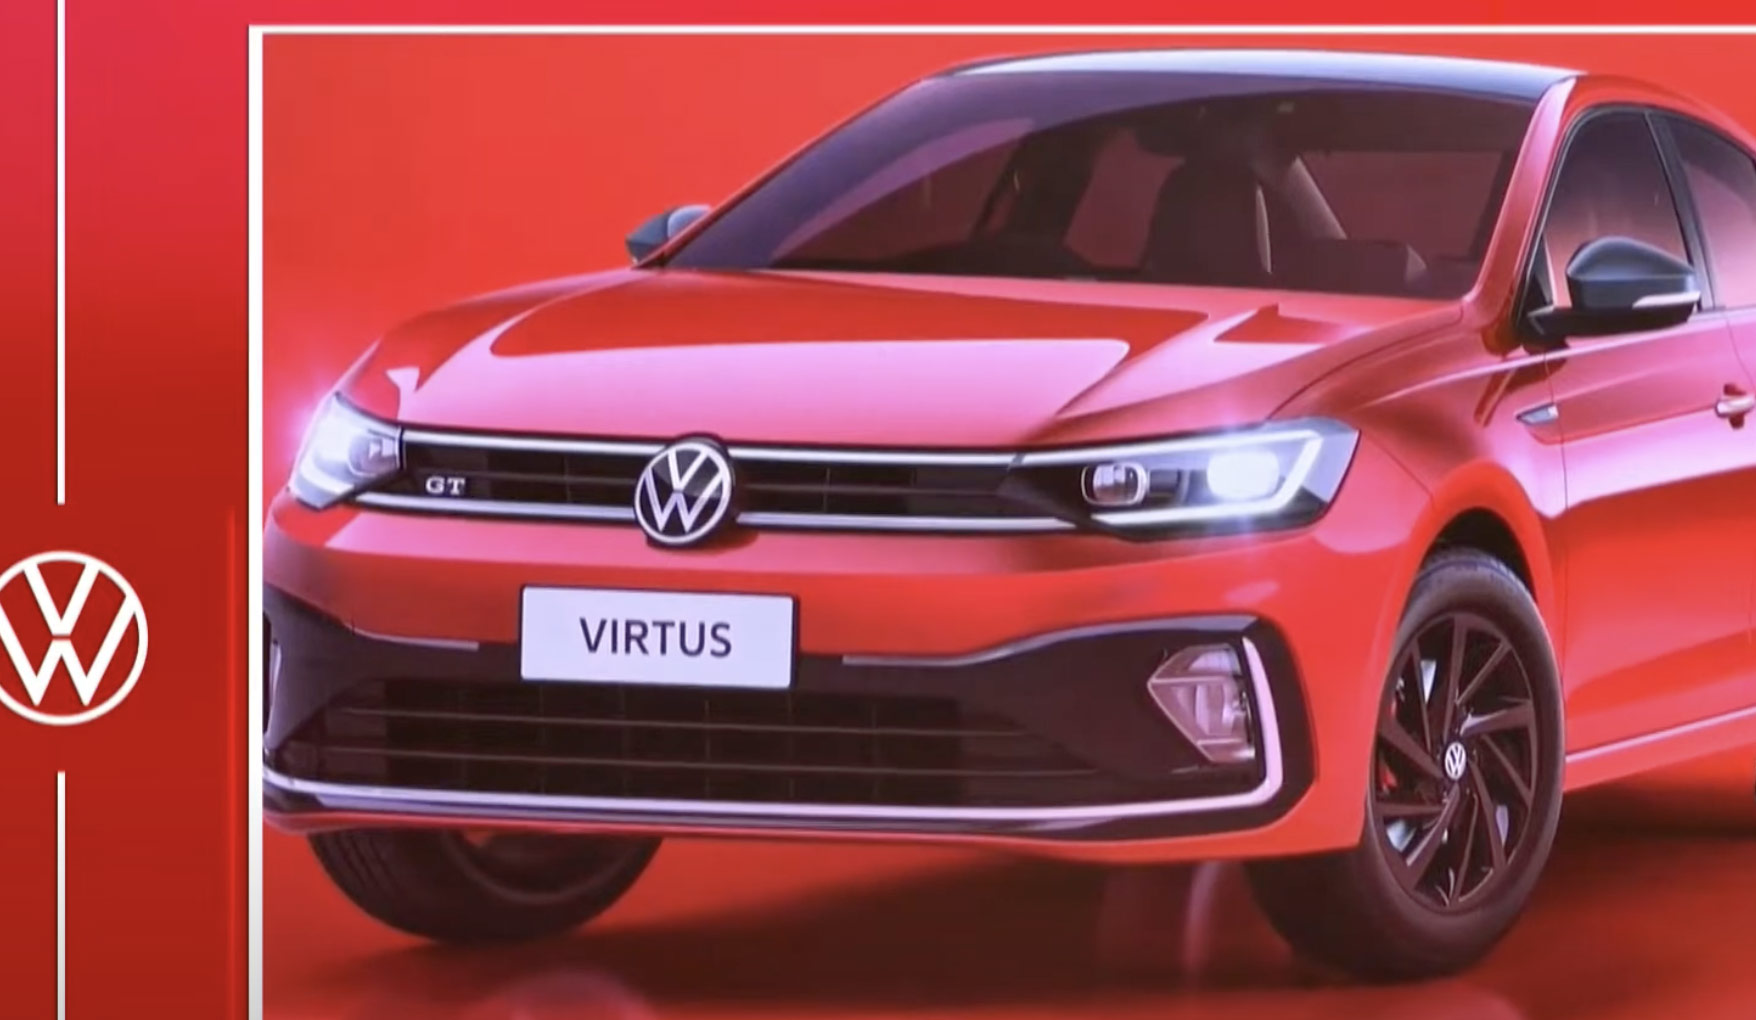 Volkswagen Nuevo Virtus 2023 diseño exterior nuevo rostro, versión GT